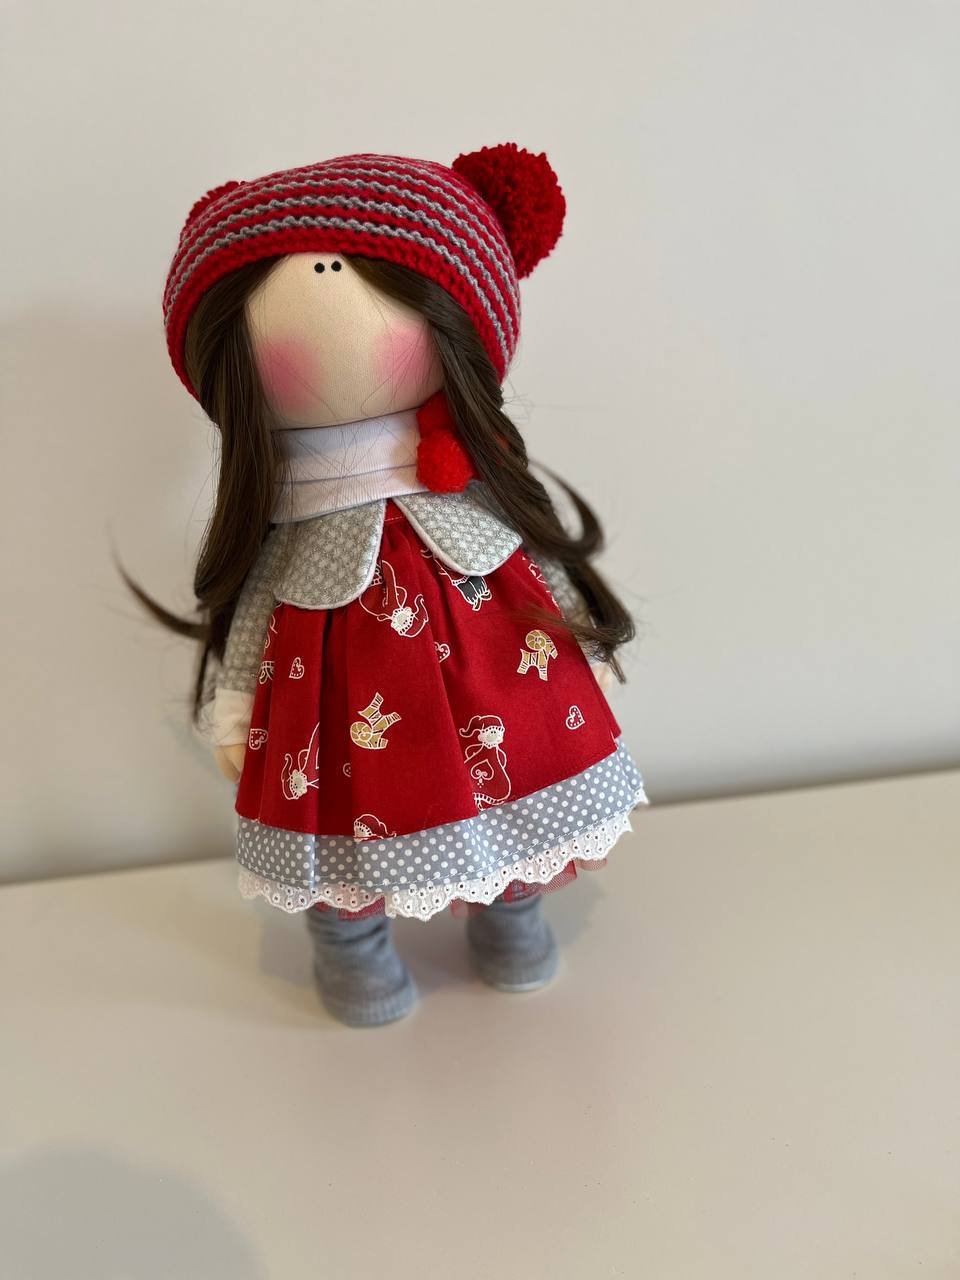 June, Handmade Tilda Rag Doll